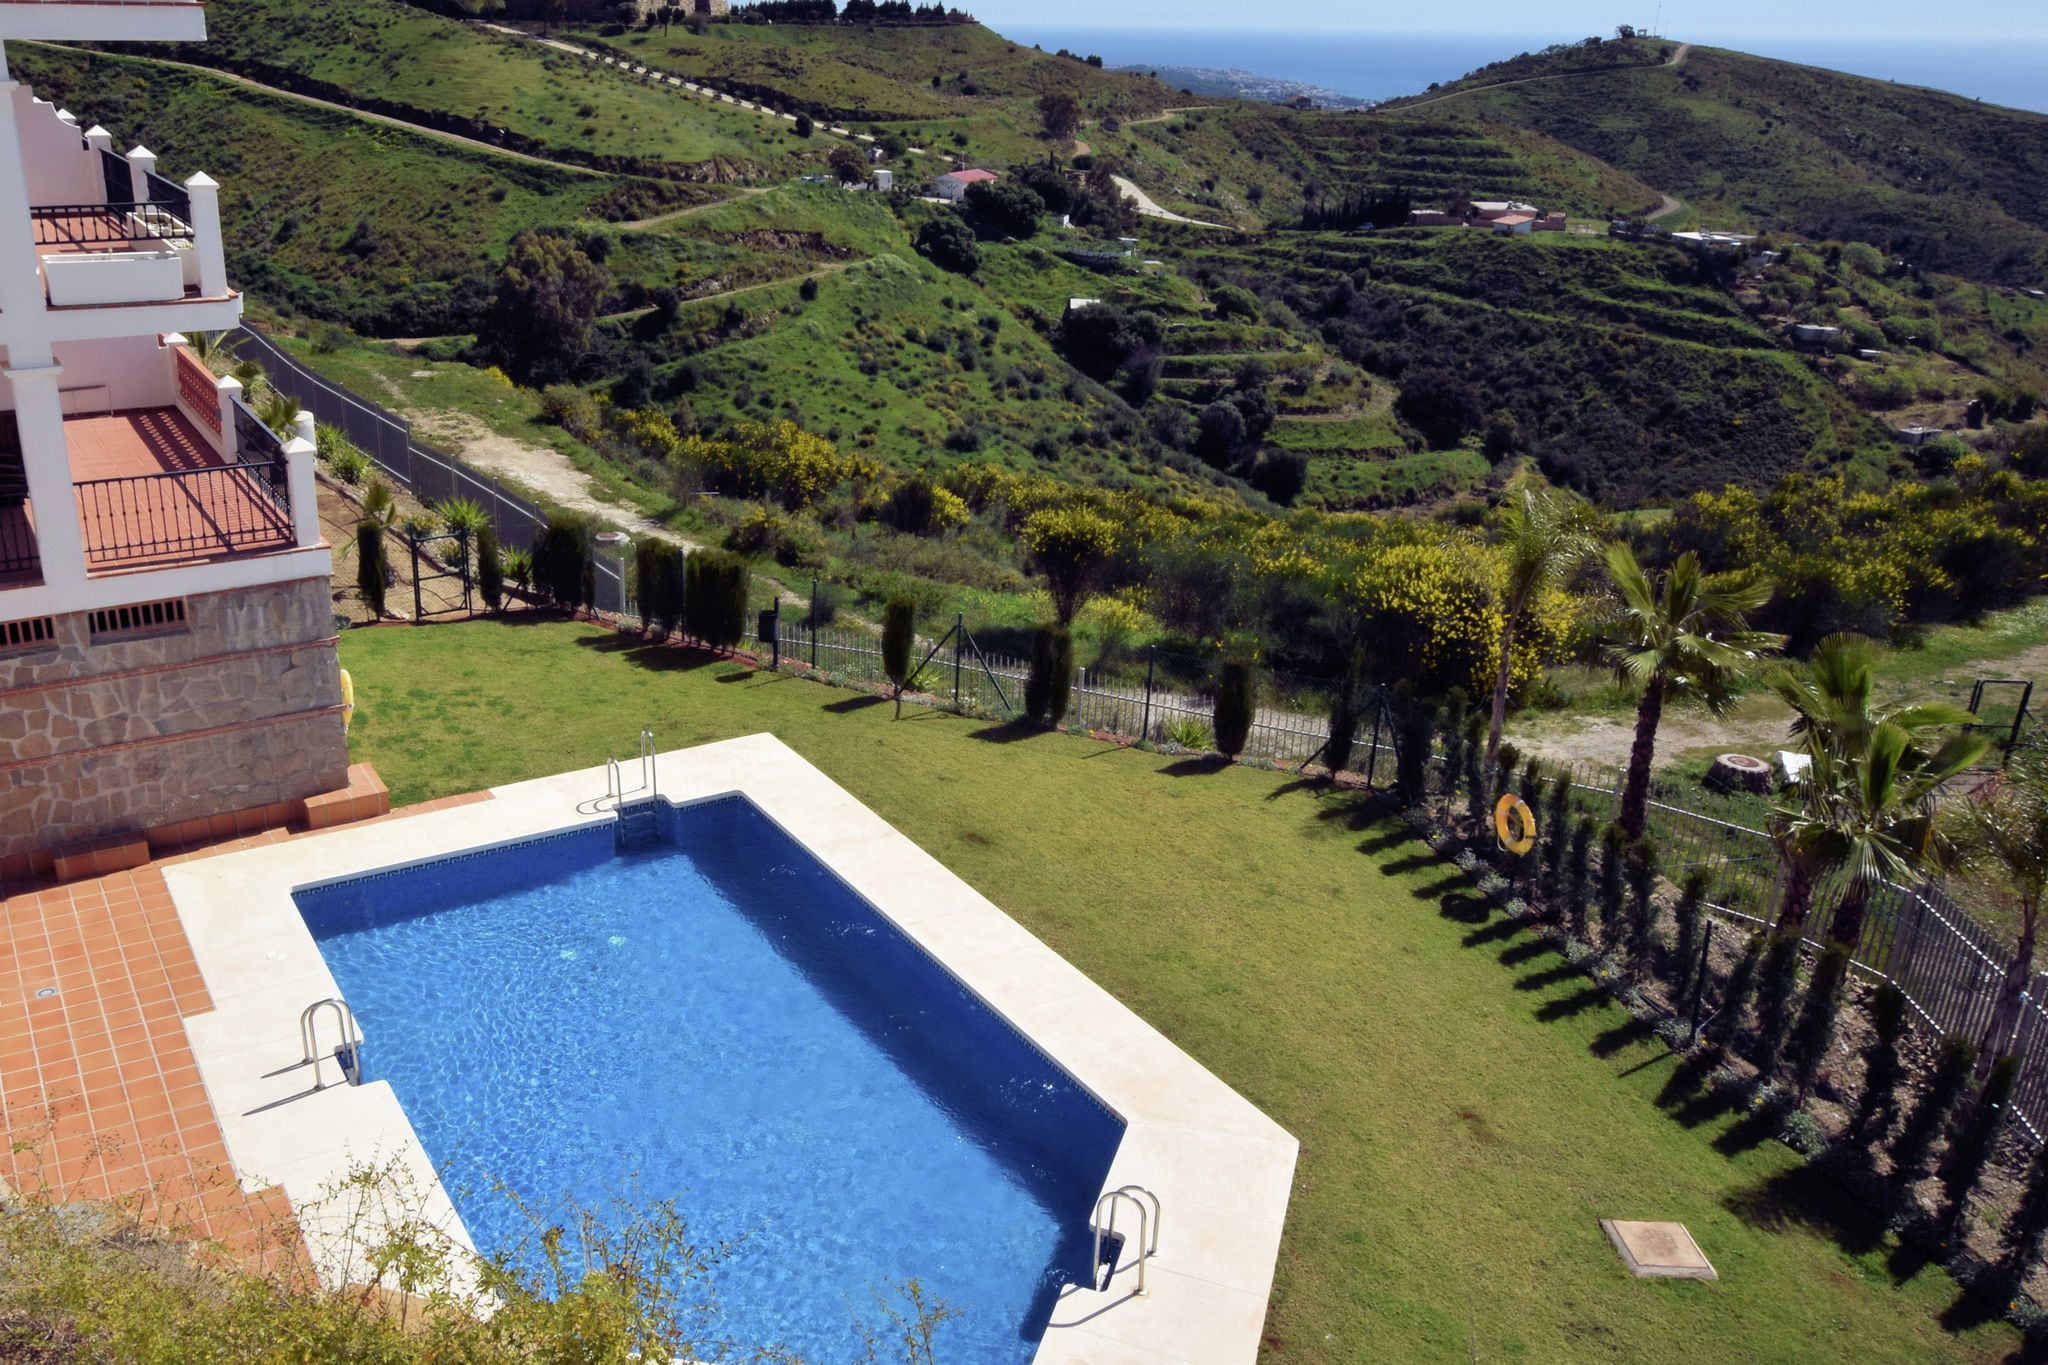 Appartement avec piscine partagée près de la mer, Andalousie